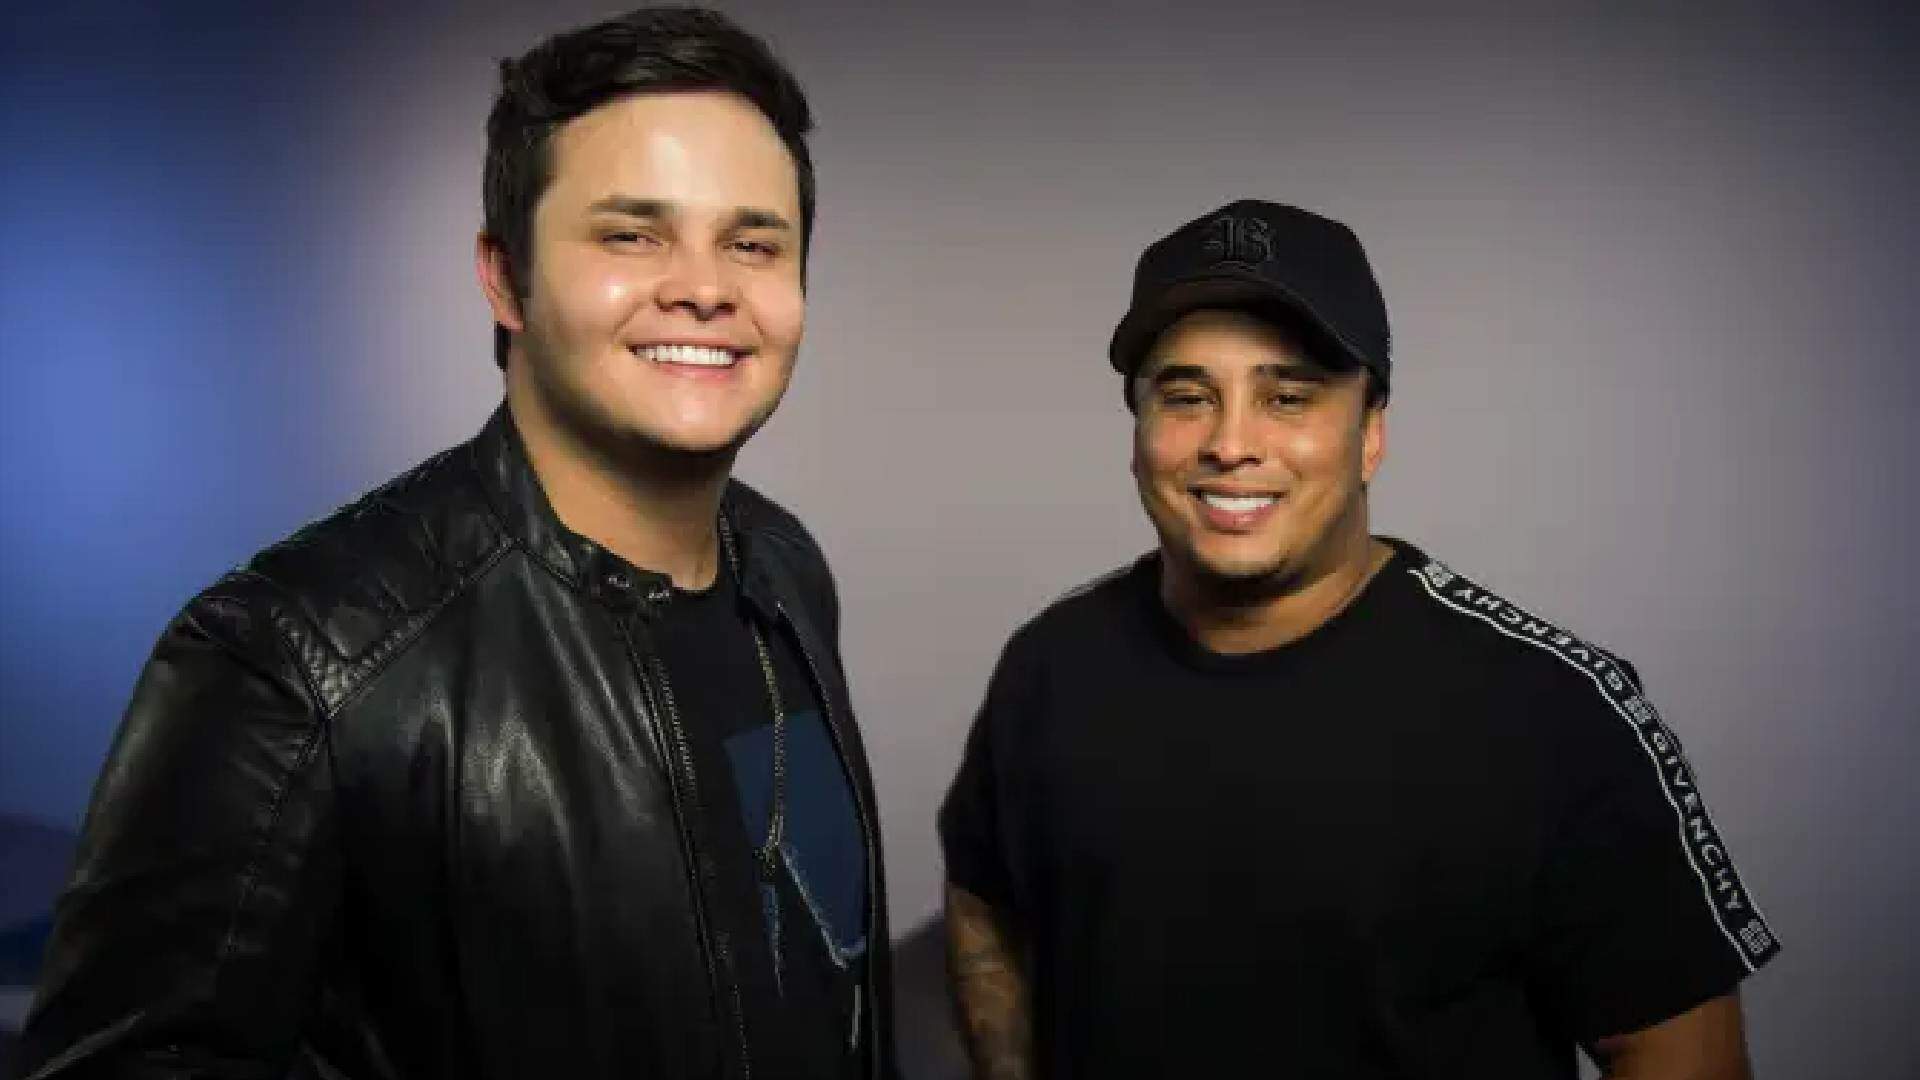 Matheus e Kauan deixa fãs ansiosos ao anunciar parceria com famosa dupla sertaneja: “vindo por aí” - Metropolitana FM